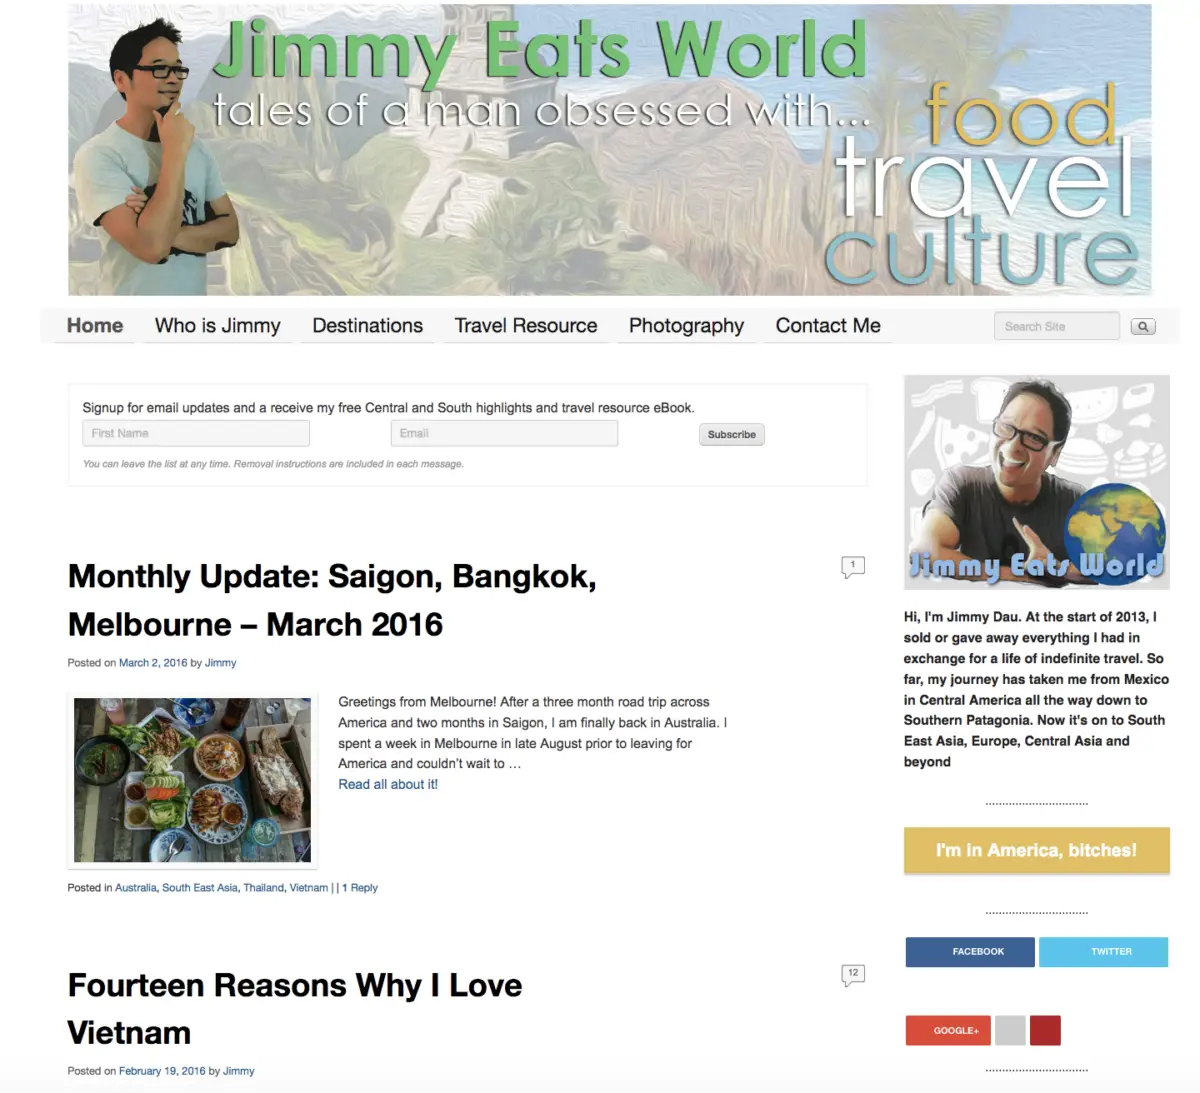 Acquisition of Jimmy Eats World / jimmyeatsworld.com